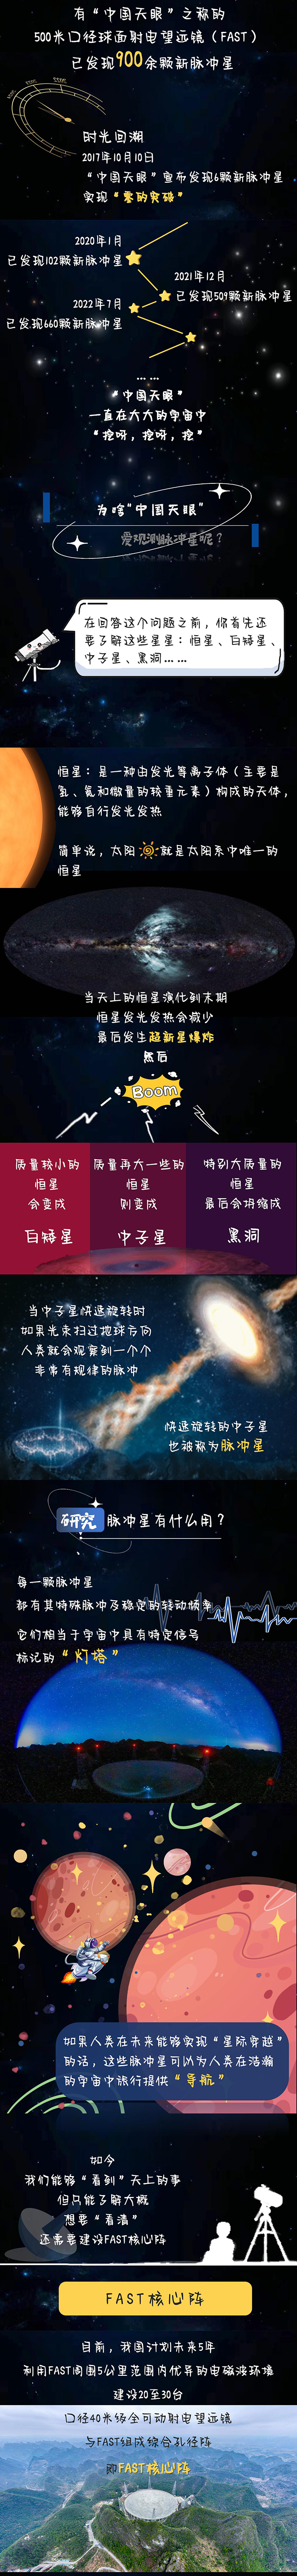 “中国天眼”为何对脉冲星“情有独钟”？